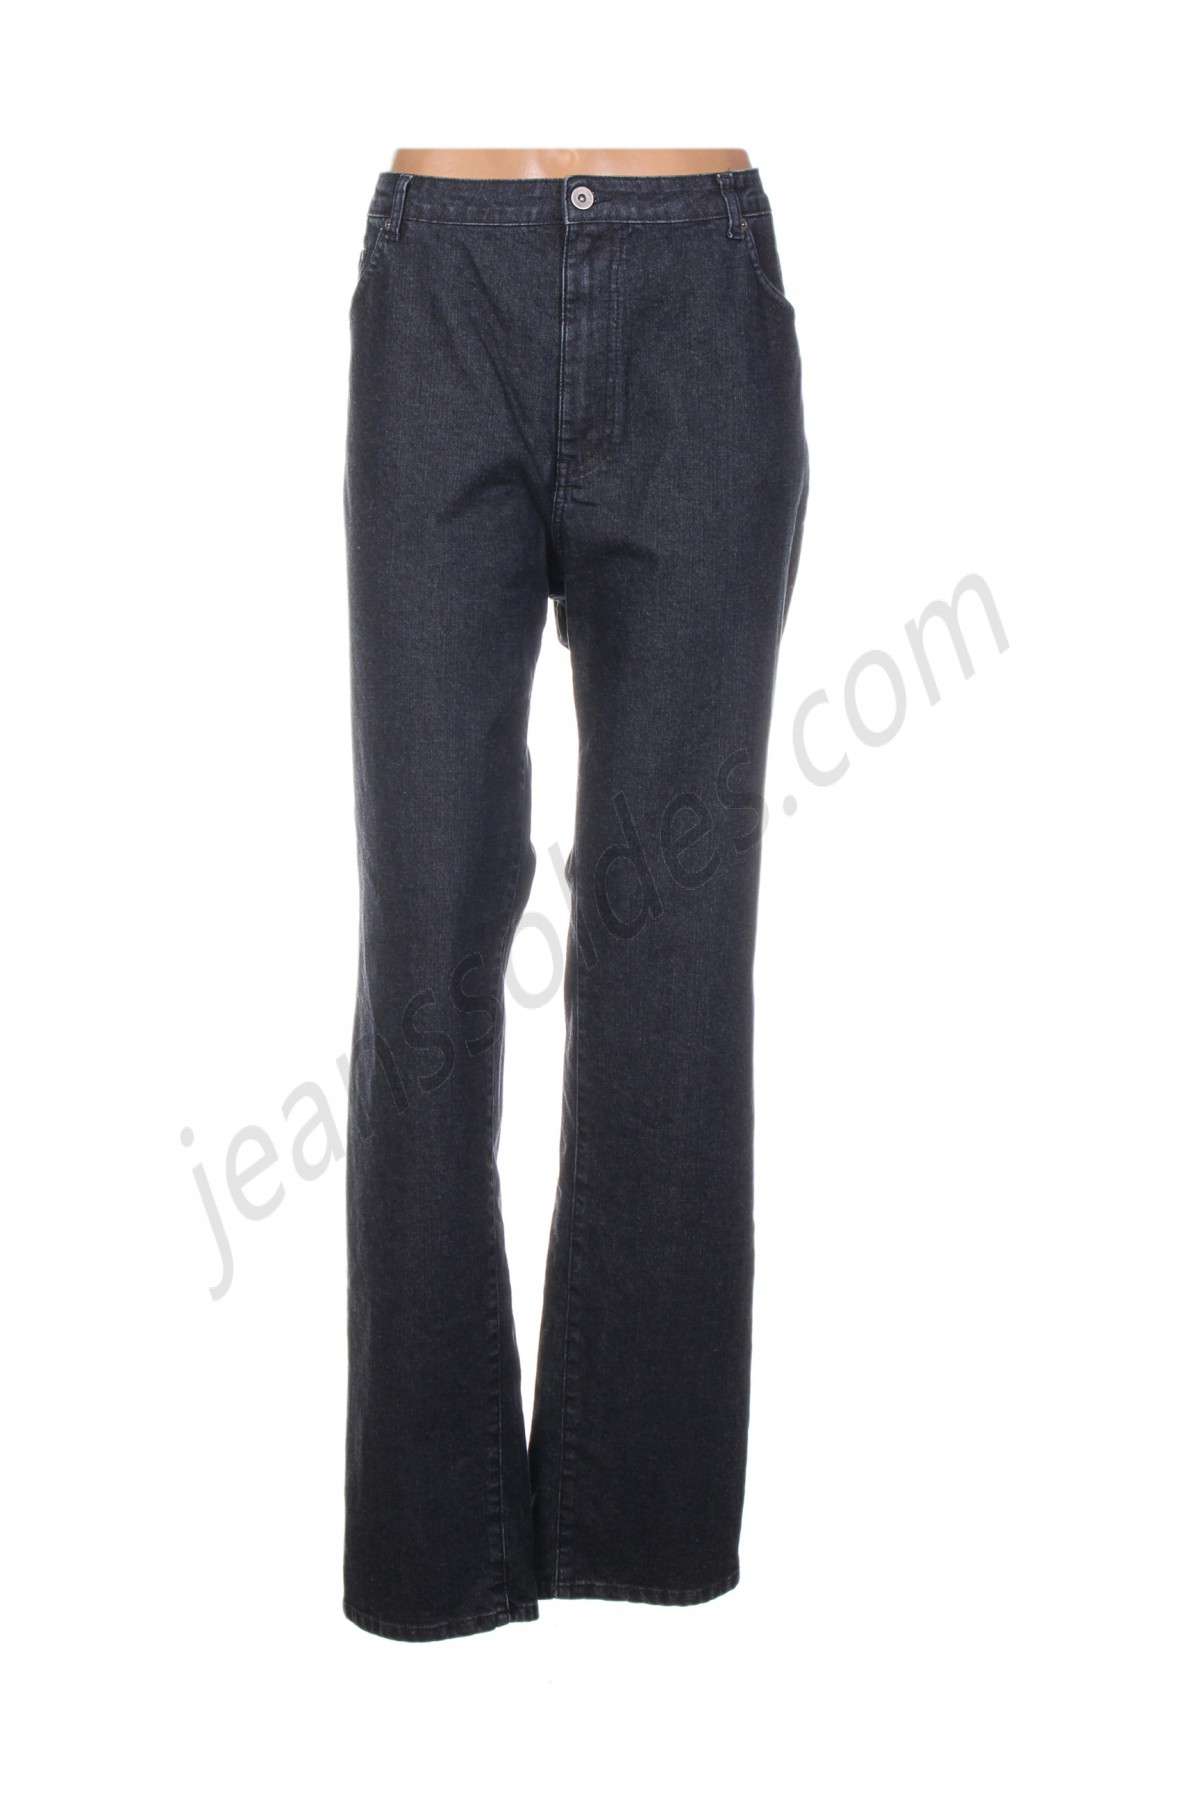 jean gabriel-Jeans coupe droite prix d’amis - -0